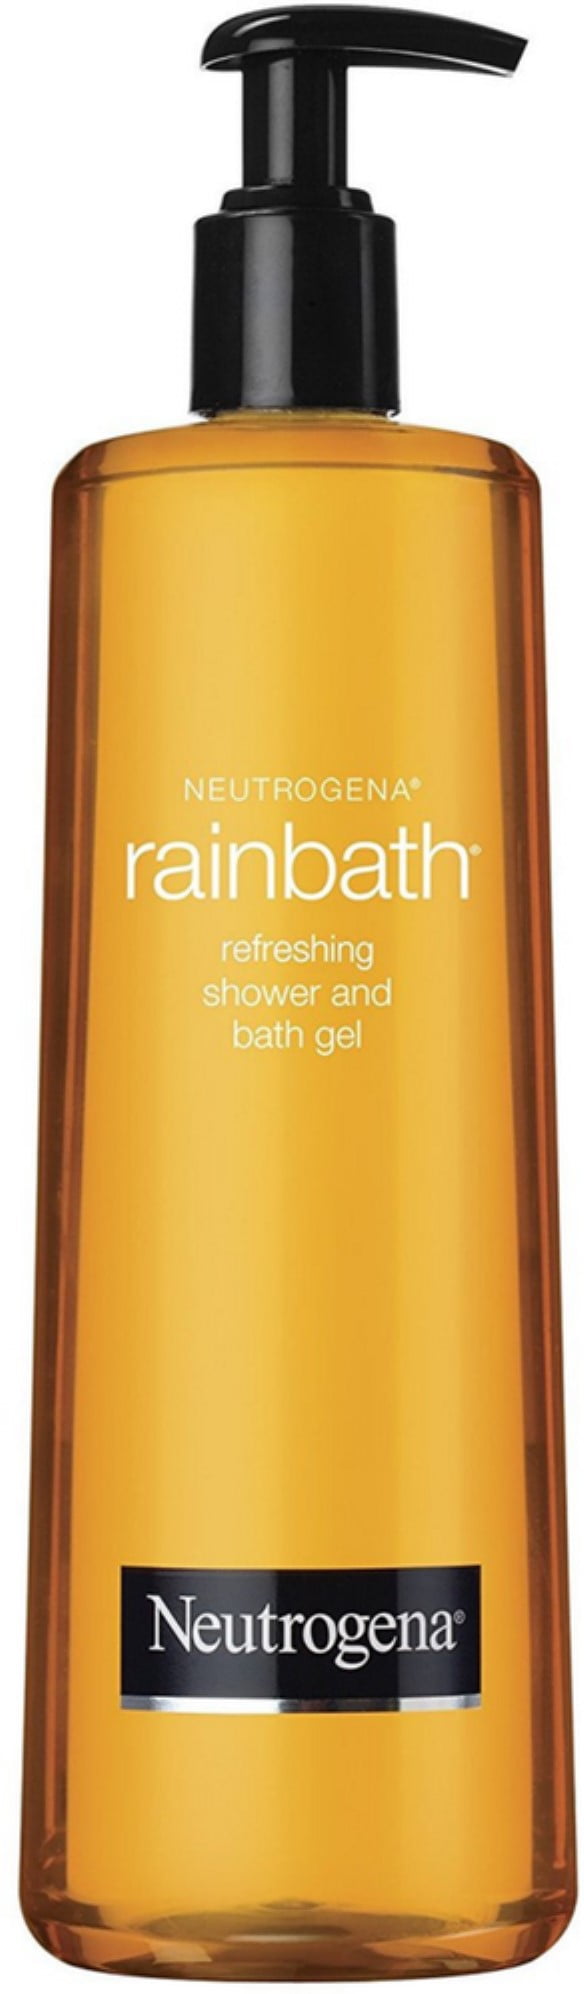 neutrogena rainbath refreshing shower and bath gel